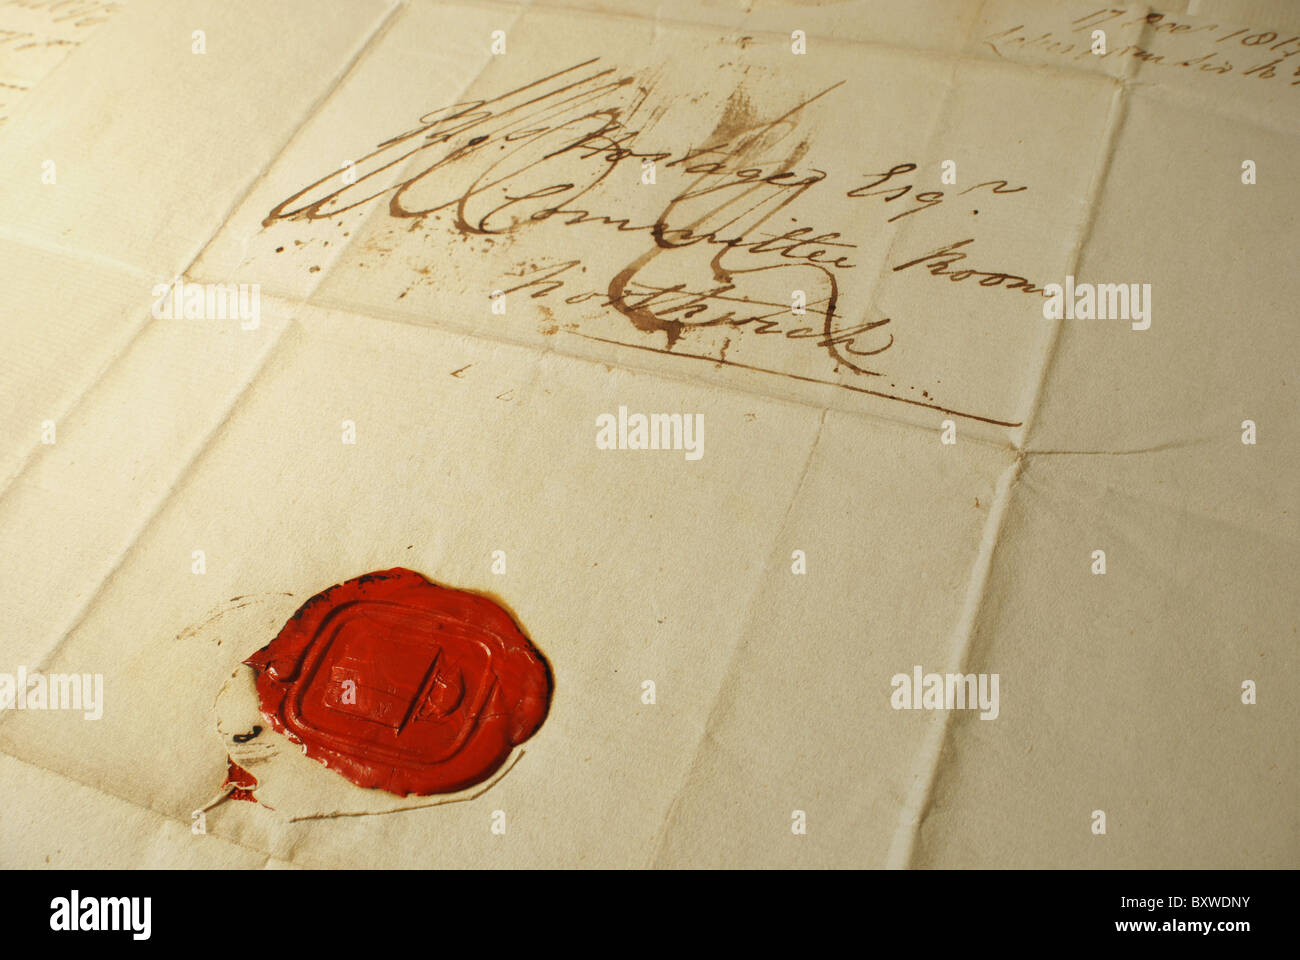 Vecchia lettera con sigillo di cera rossa - corrispondenza del 1800. Primo piano della vecchia lettera con sigillo e scrittura elegante Foto Stock